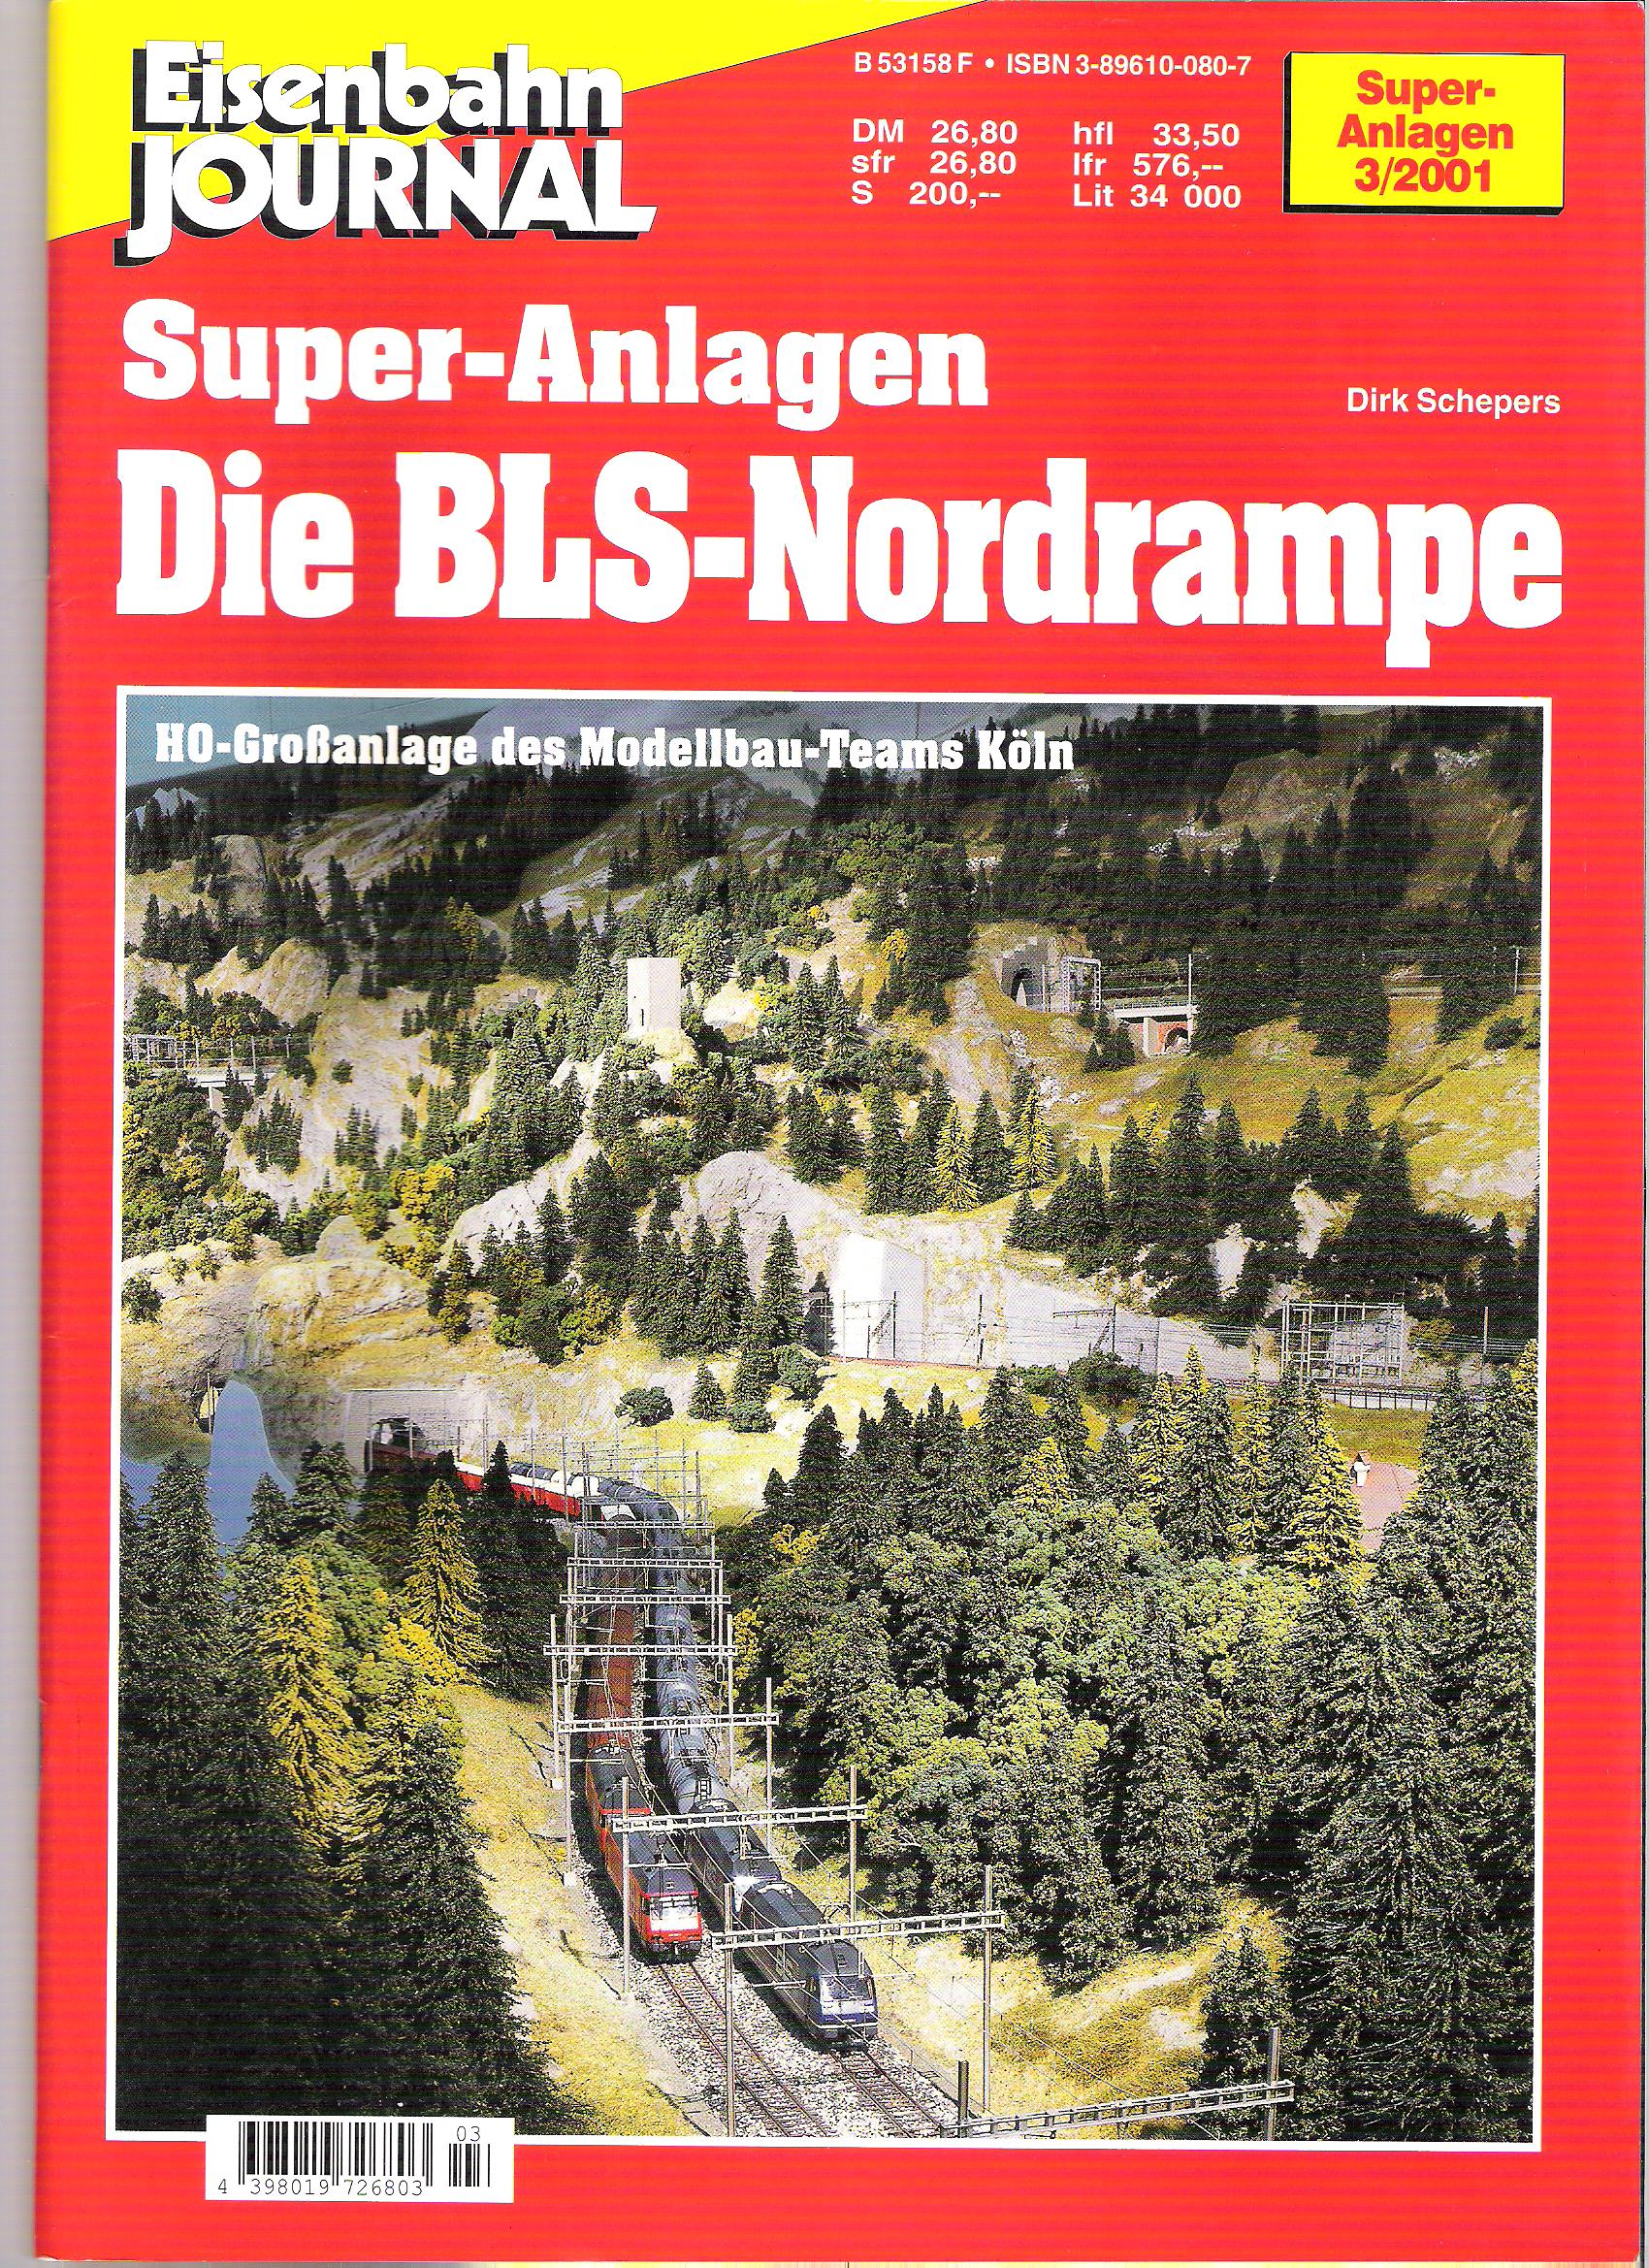 Super Anlagen Die BLS Nordrampe.jpg